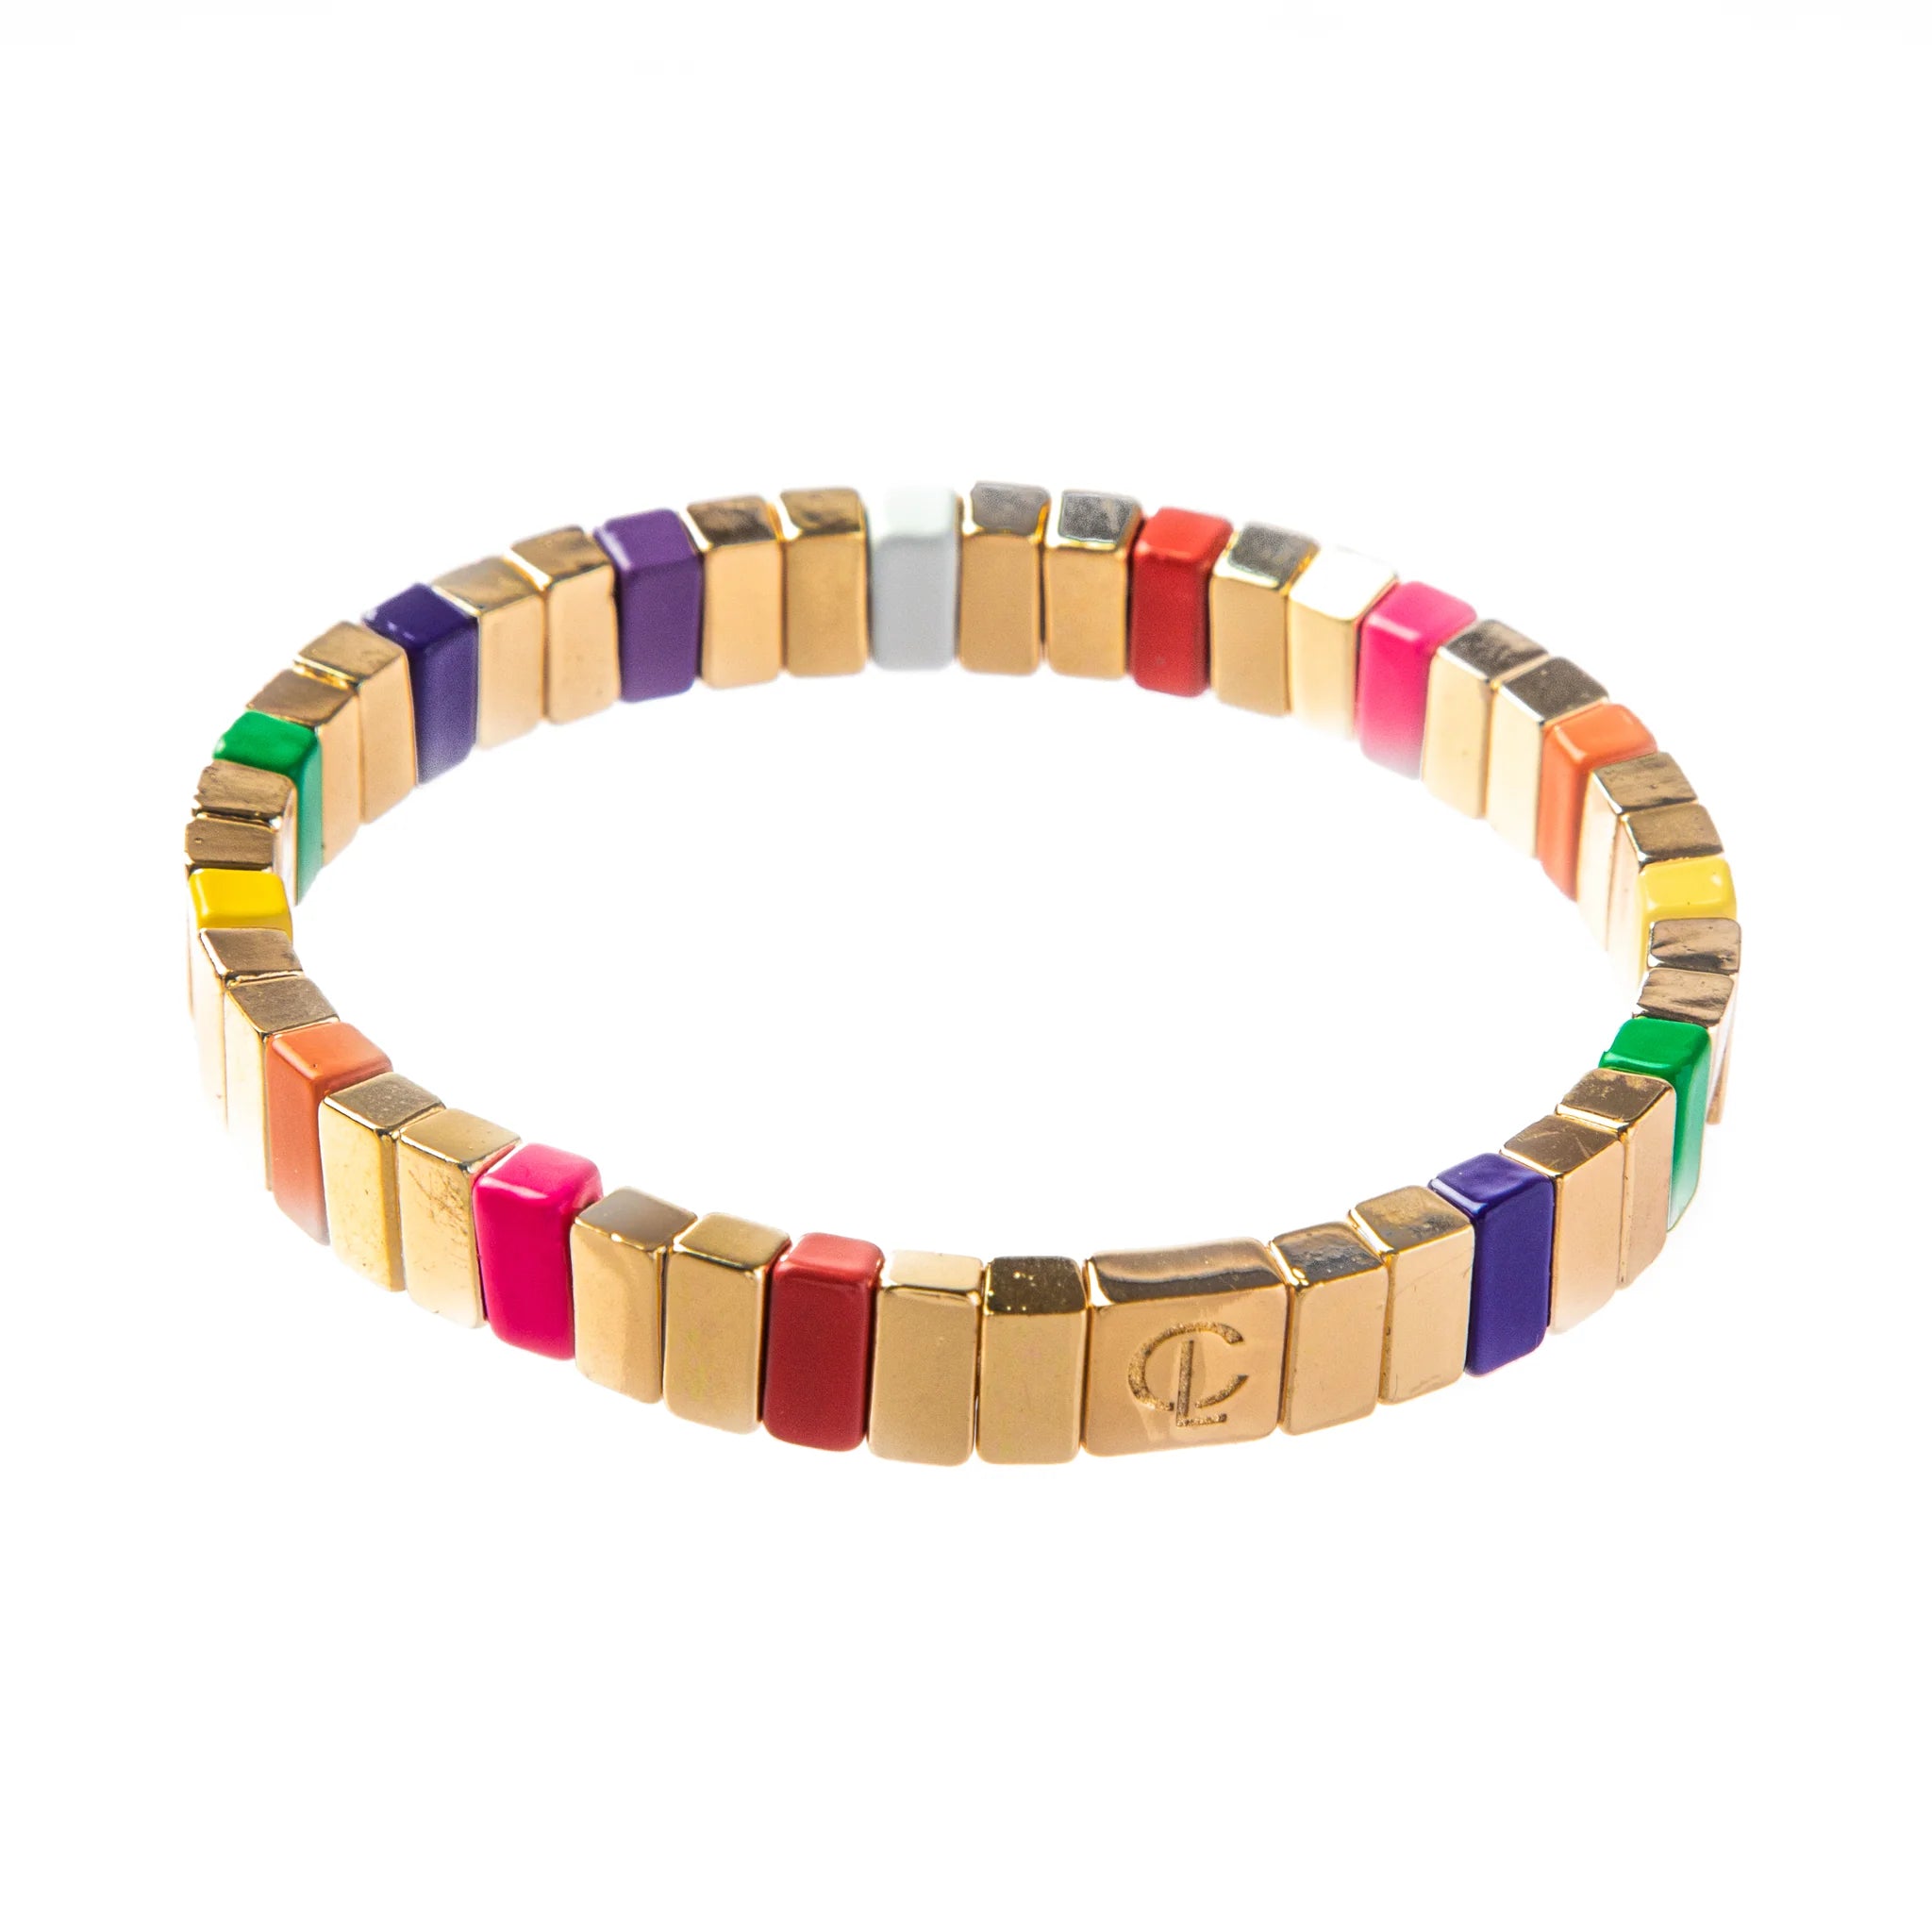 Tile bracelet - seabreeze gold